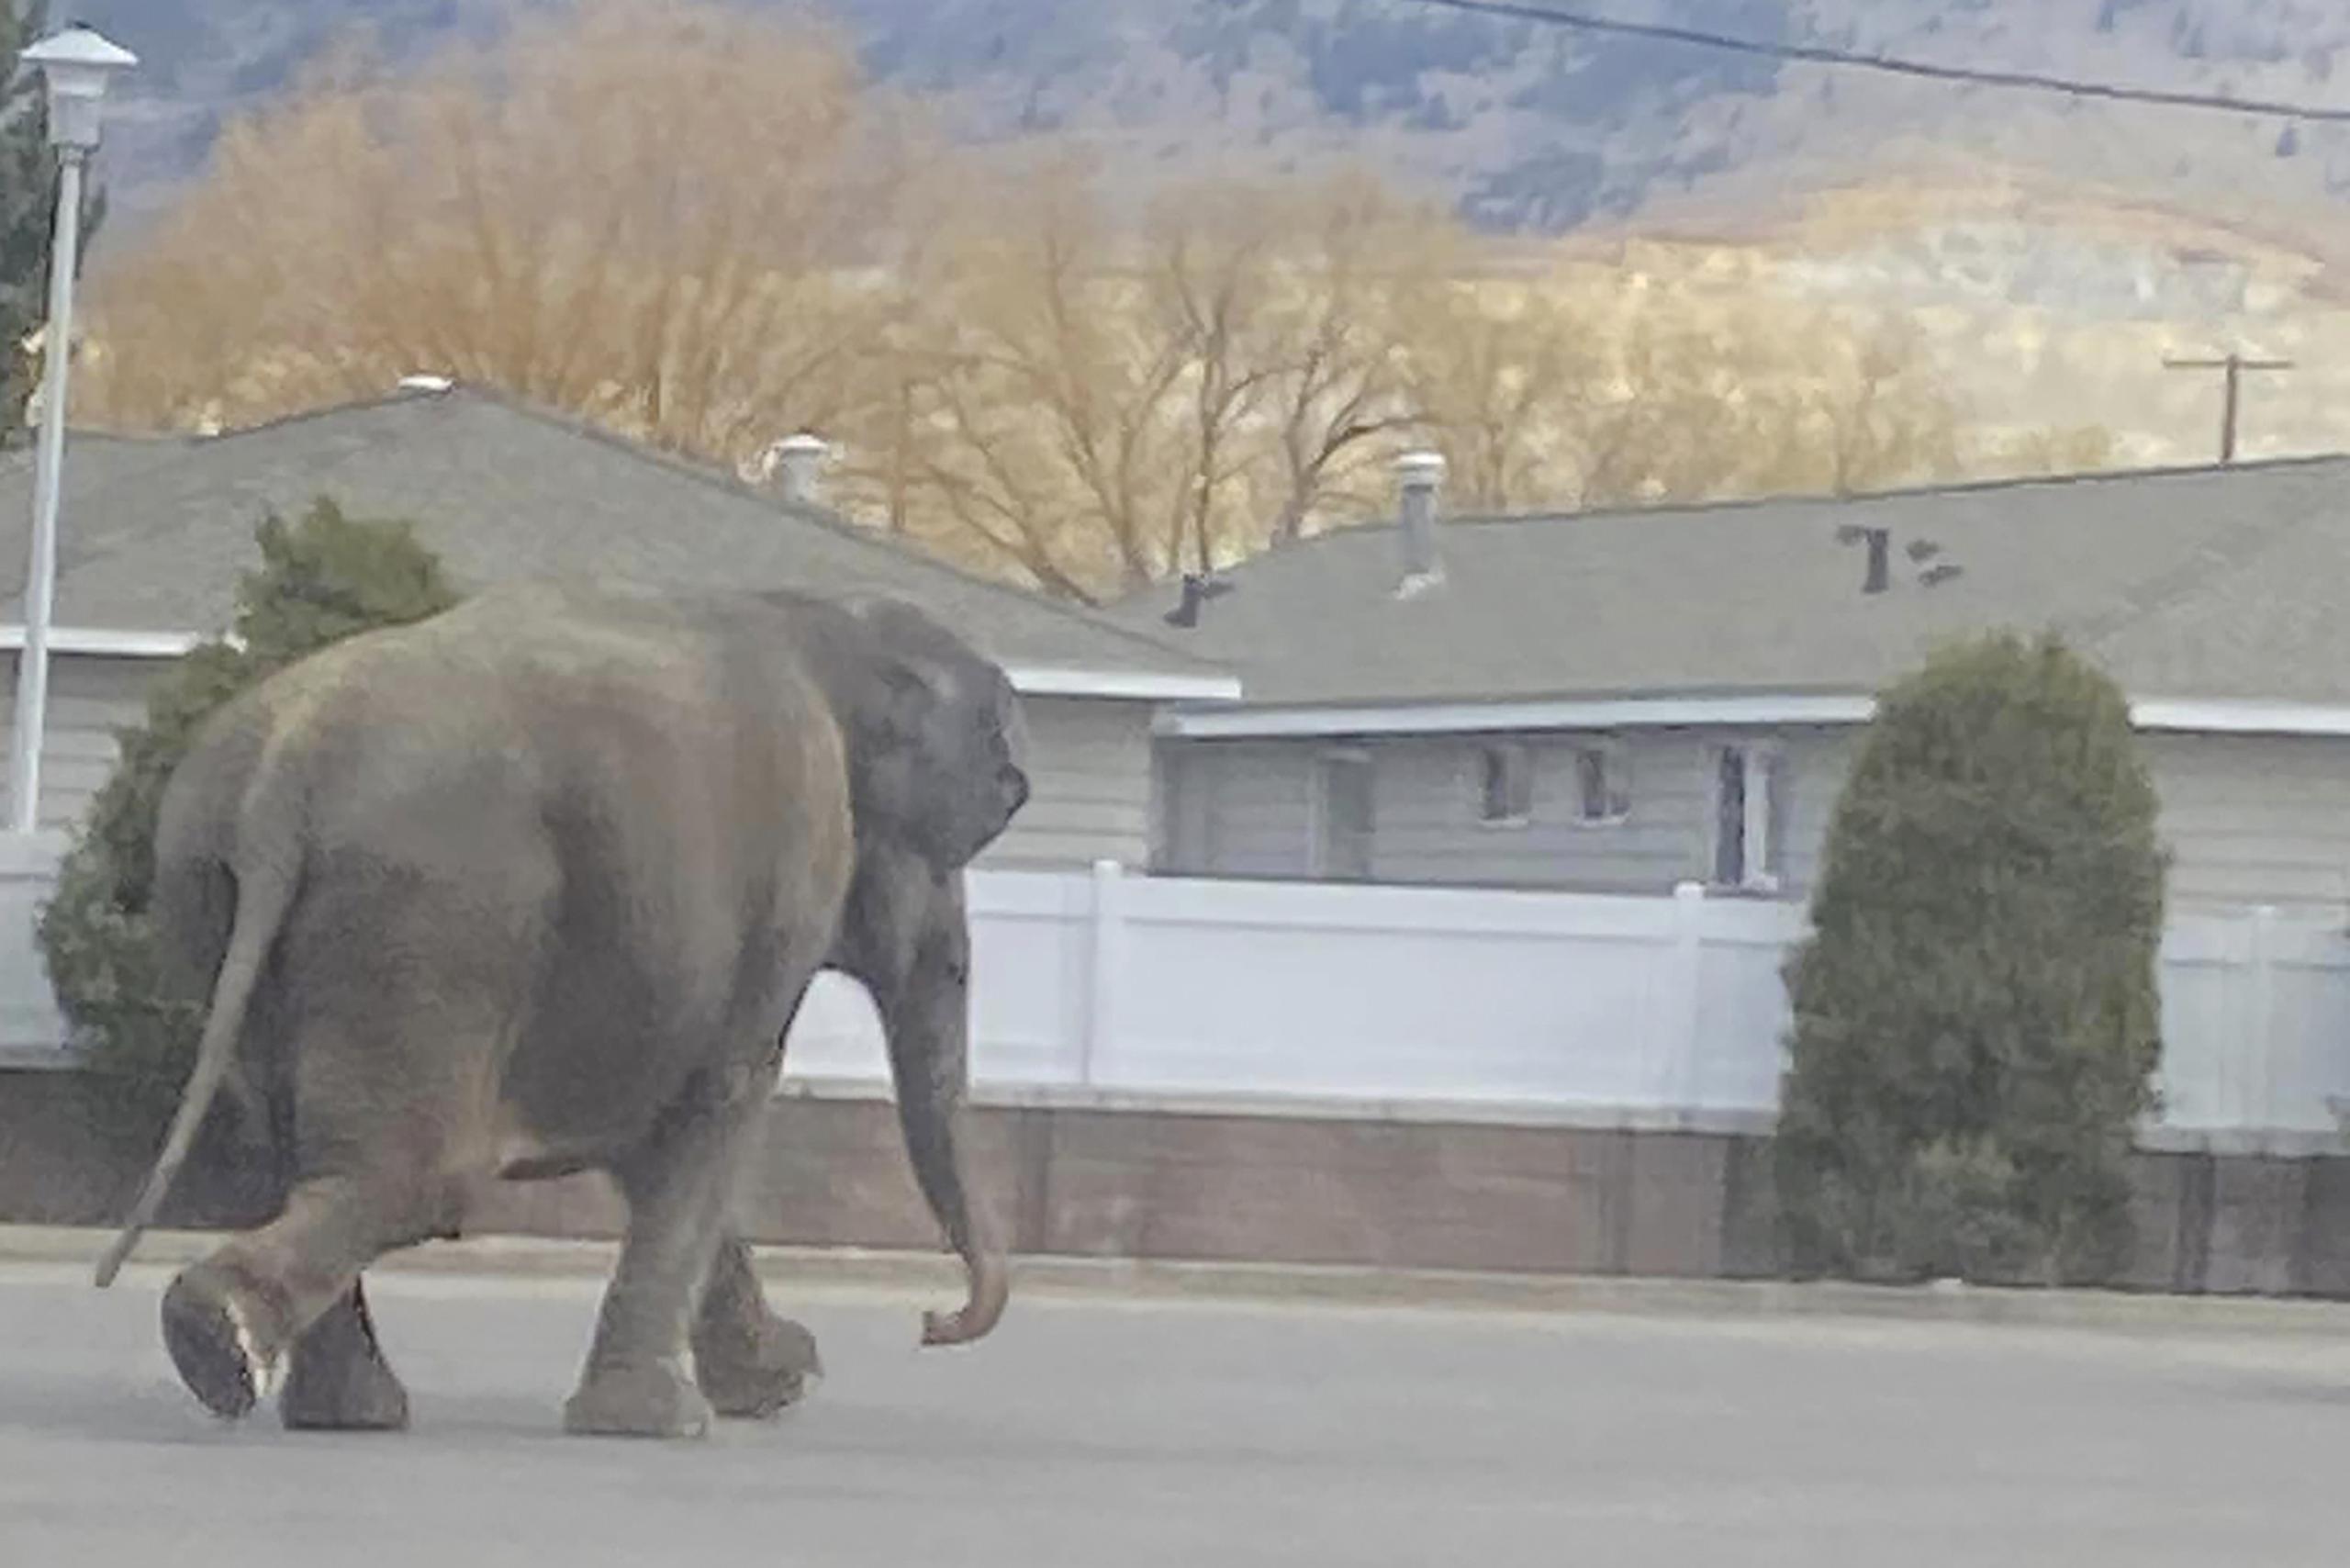 Pasaron apenas unos 10 minutos desde el momento que la elefanta escapó hasta que empleados del circo la recogieron en un remolque.